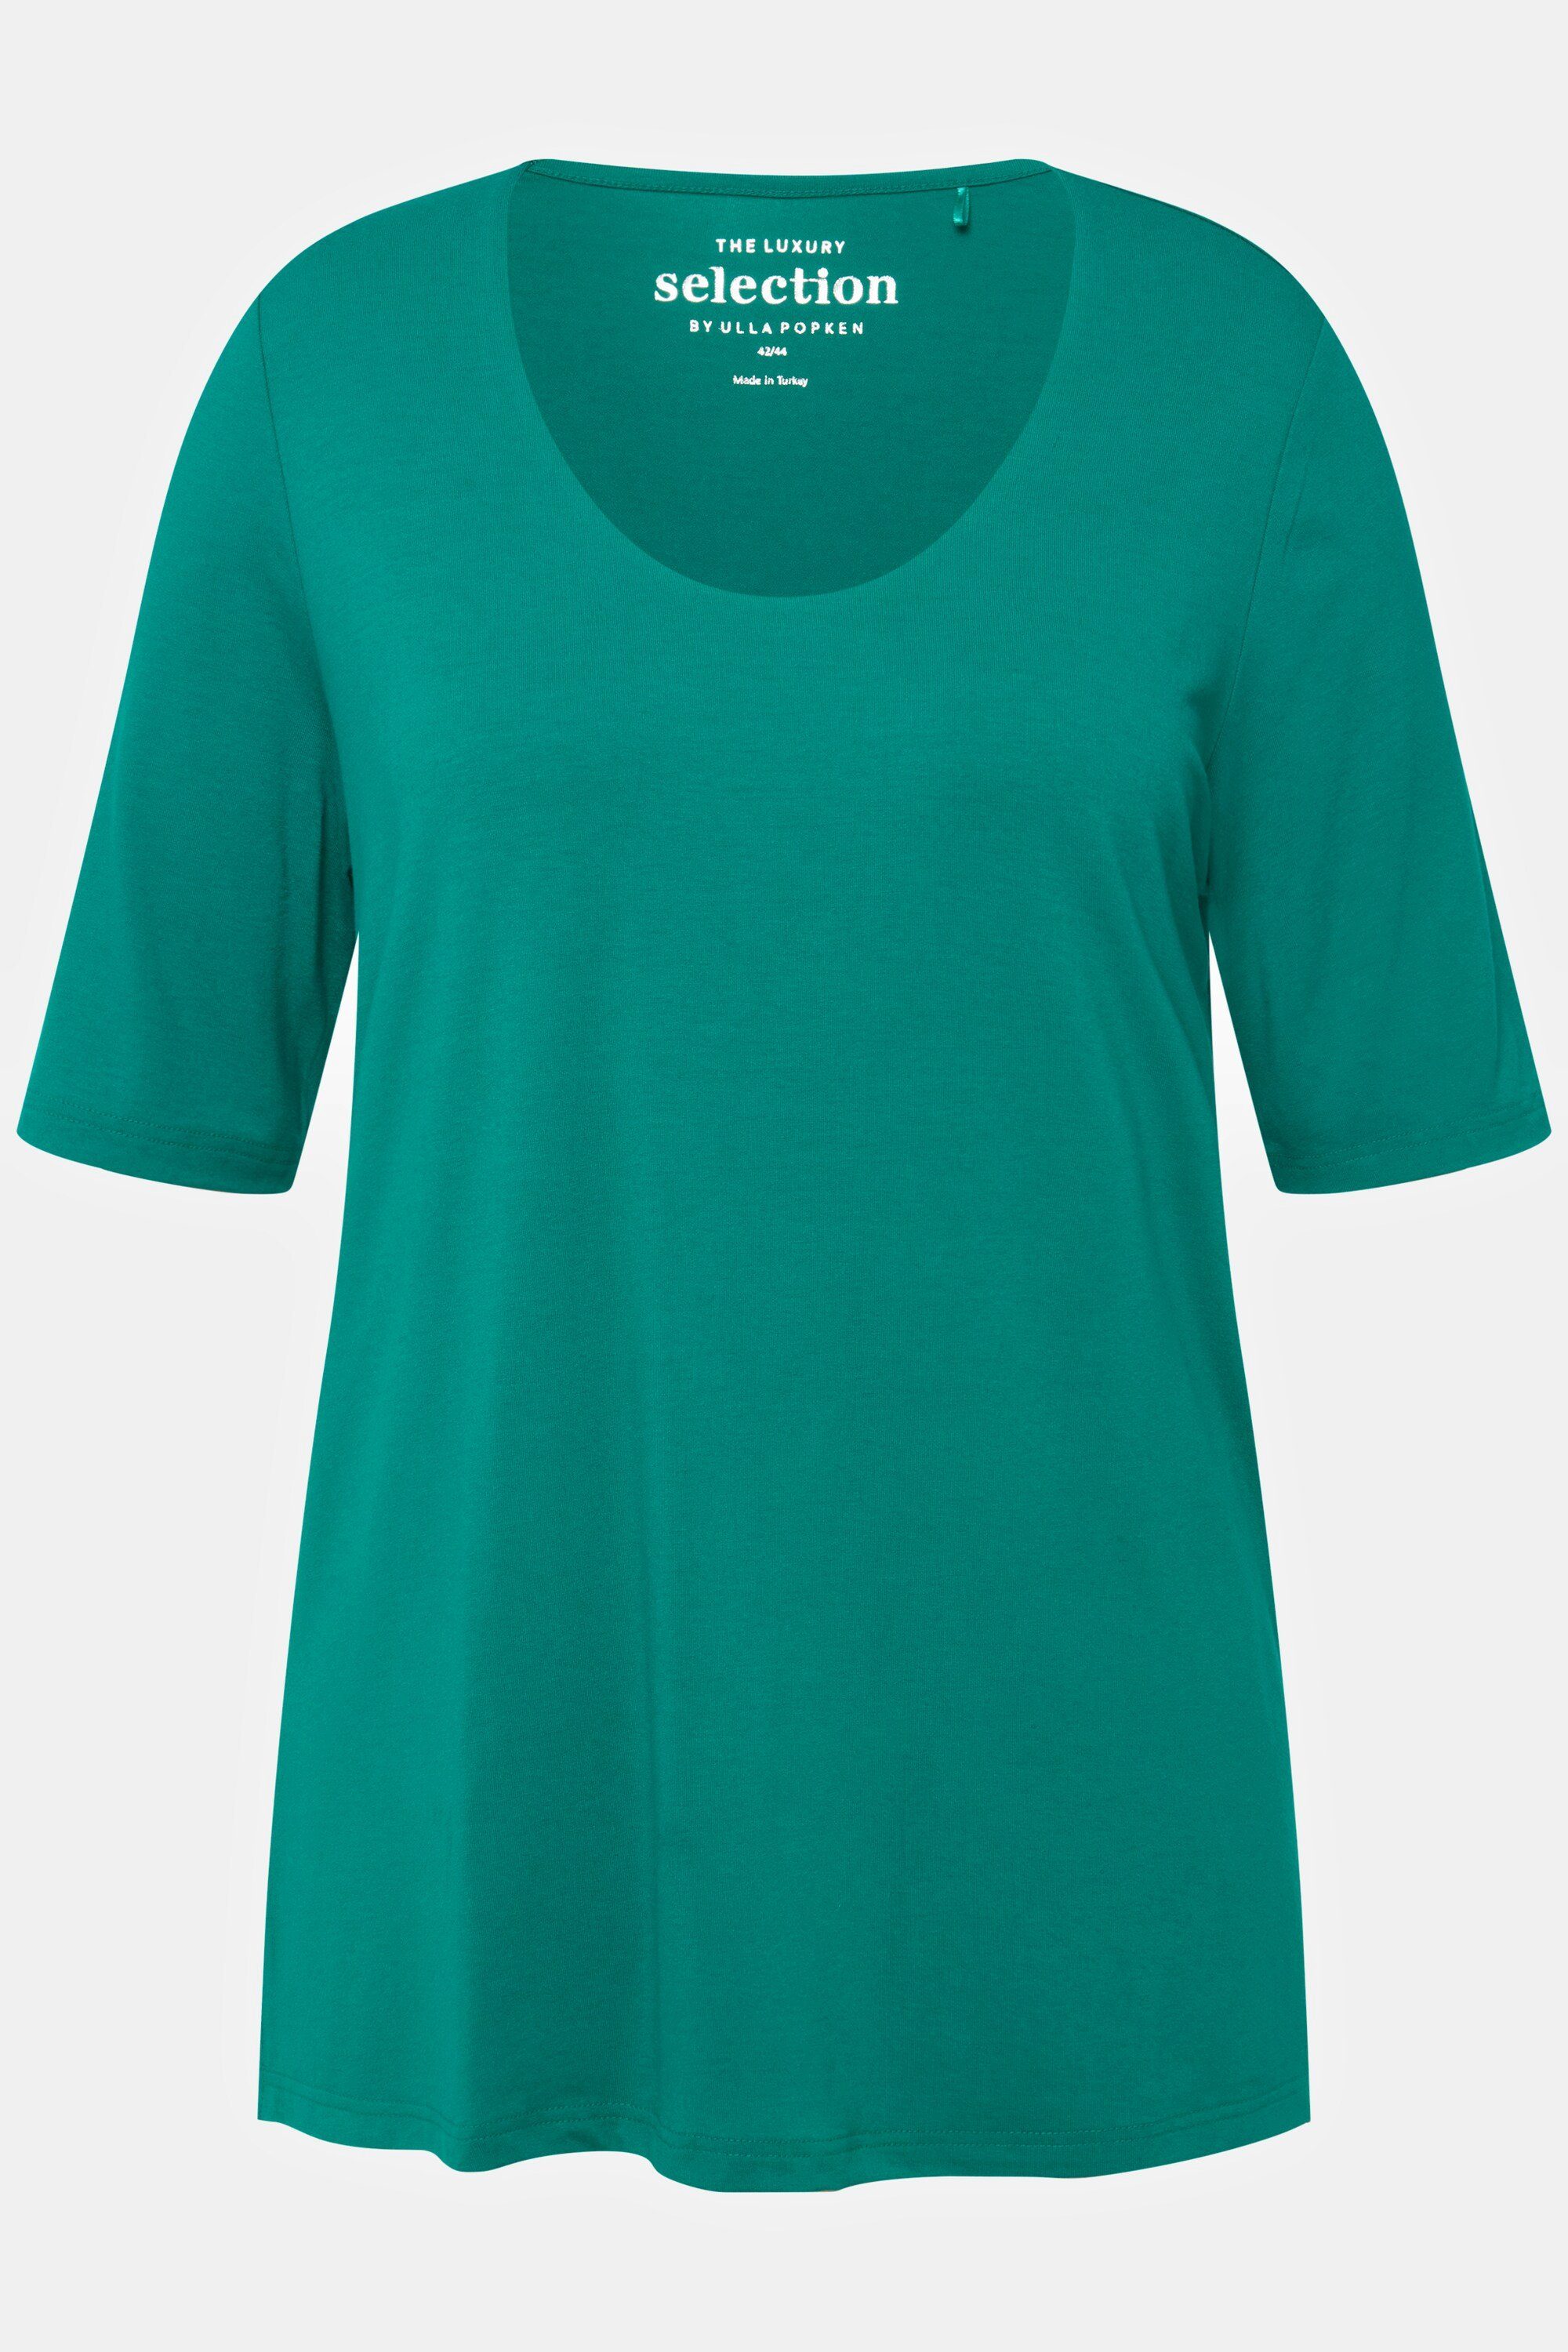 Rundhalsshirt vorne V-Ausschnitt grünblau Popken doppellagig Halbarm Ulla T-Shirt